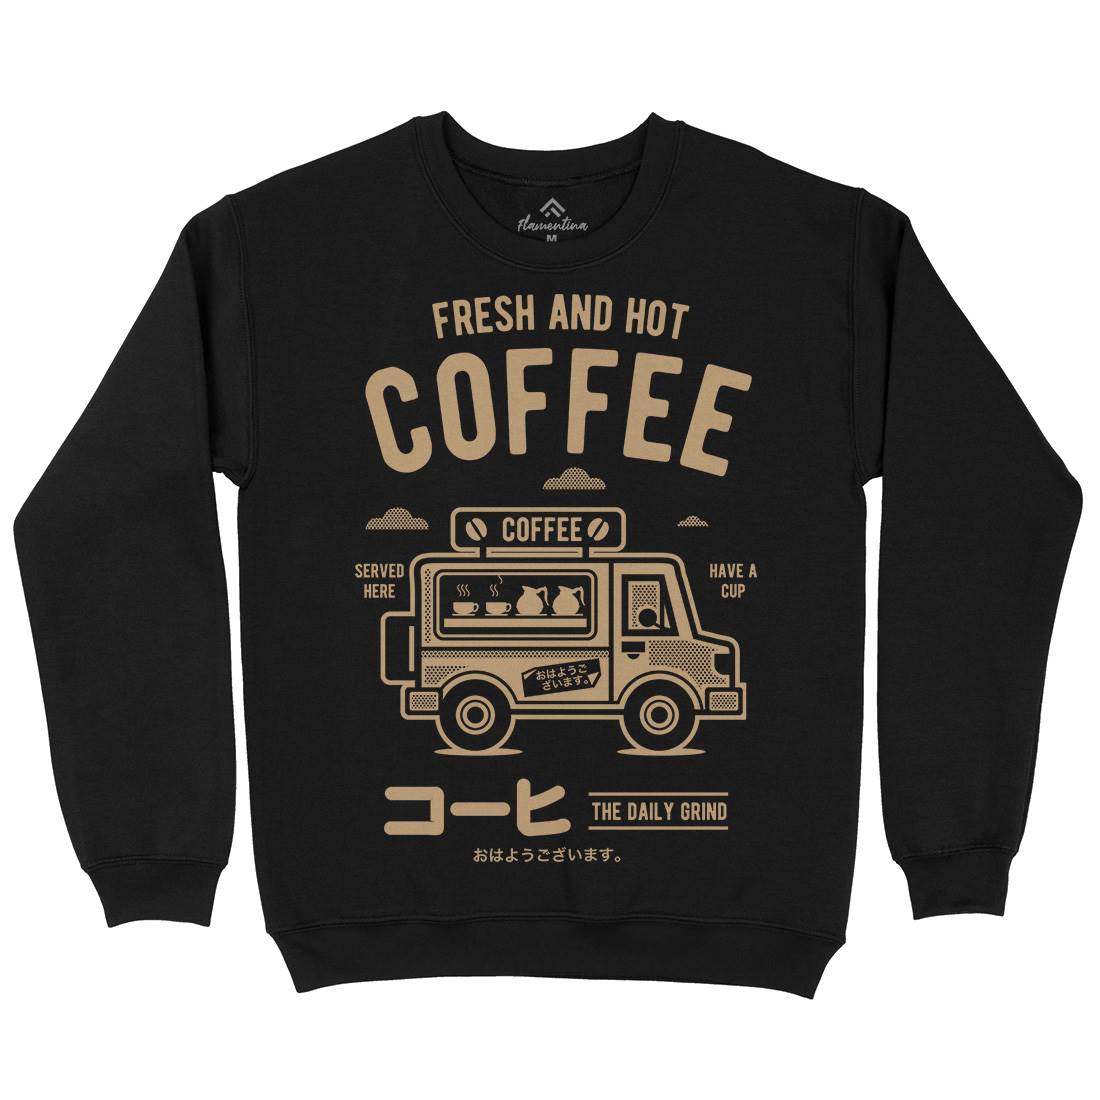 Coffee Van Kids Crew Neck Sweatshirt Drinks A219